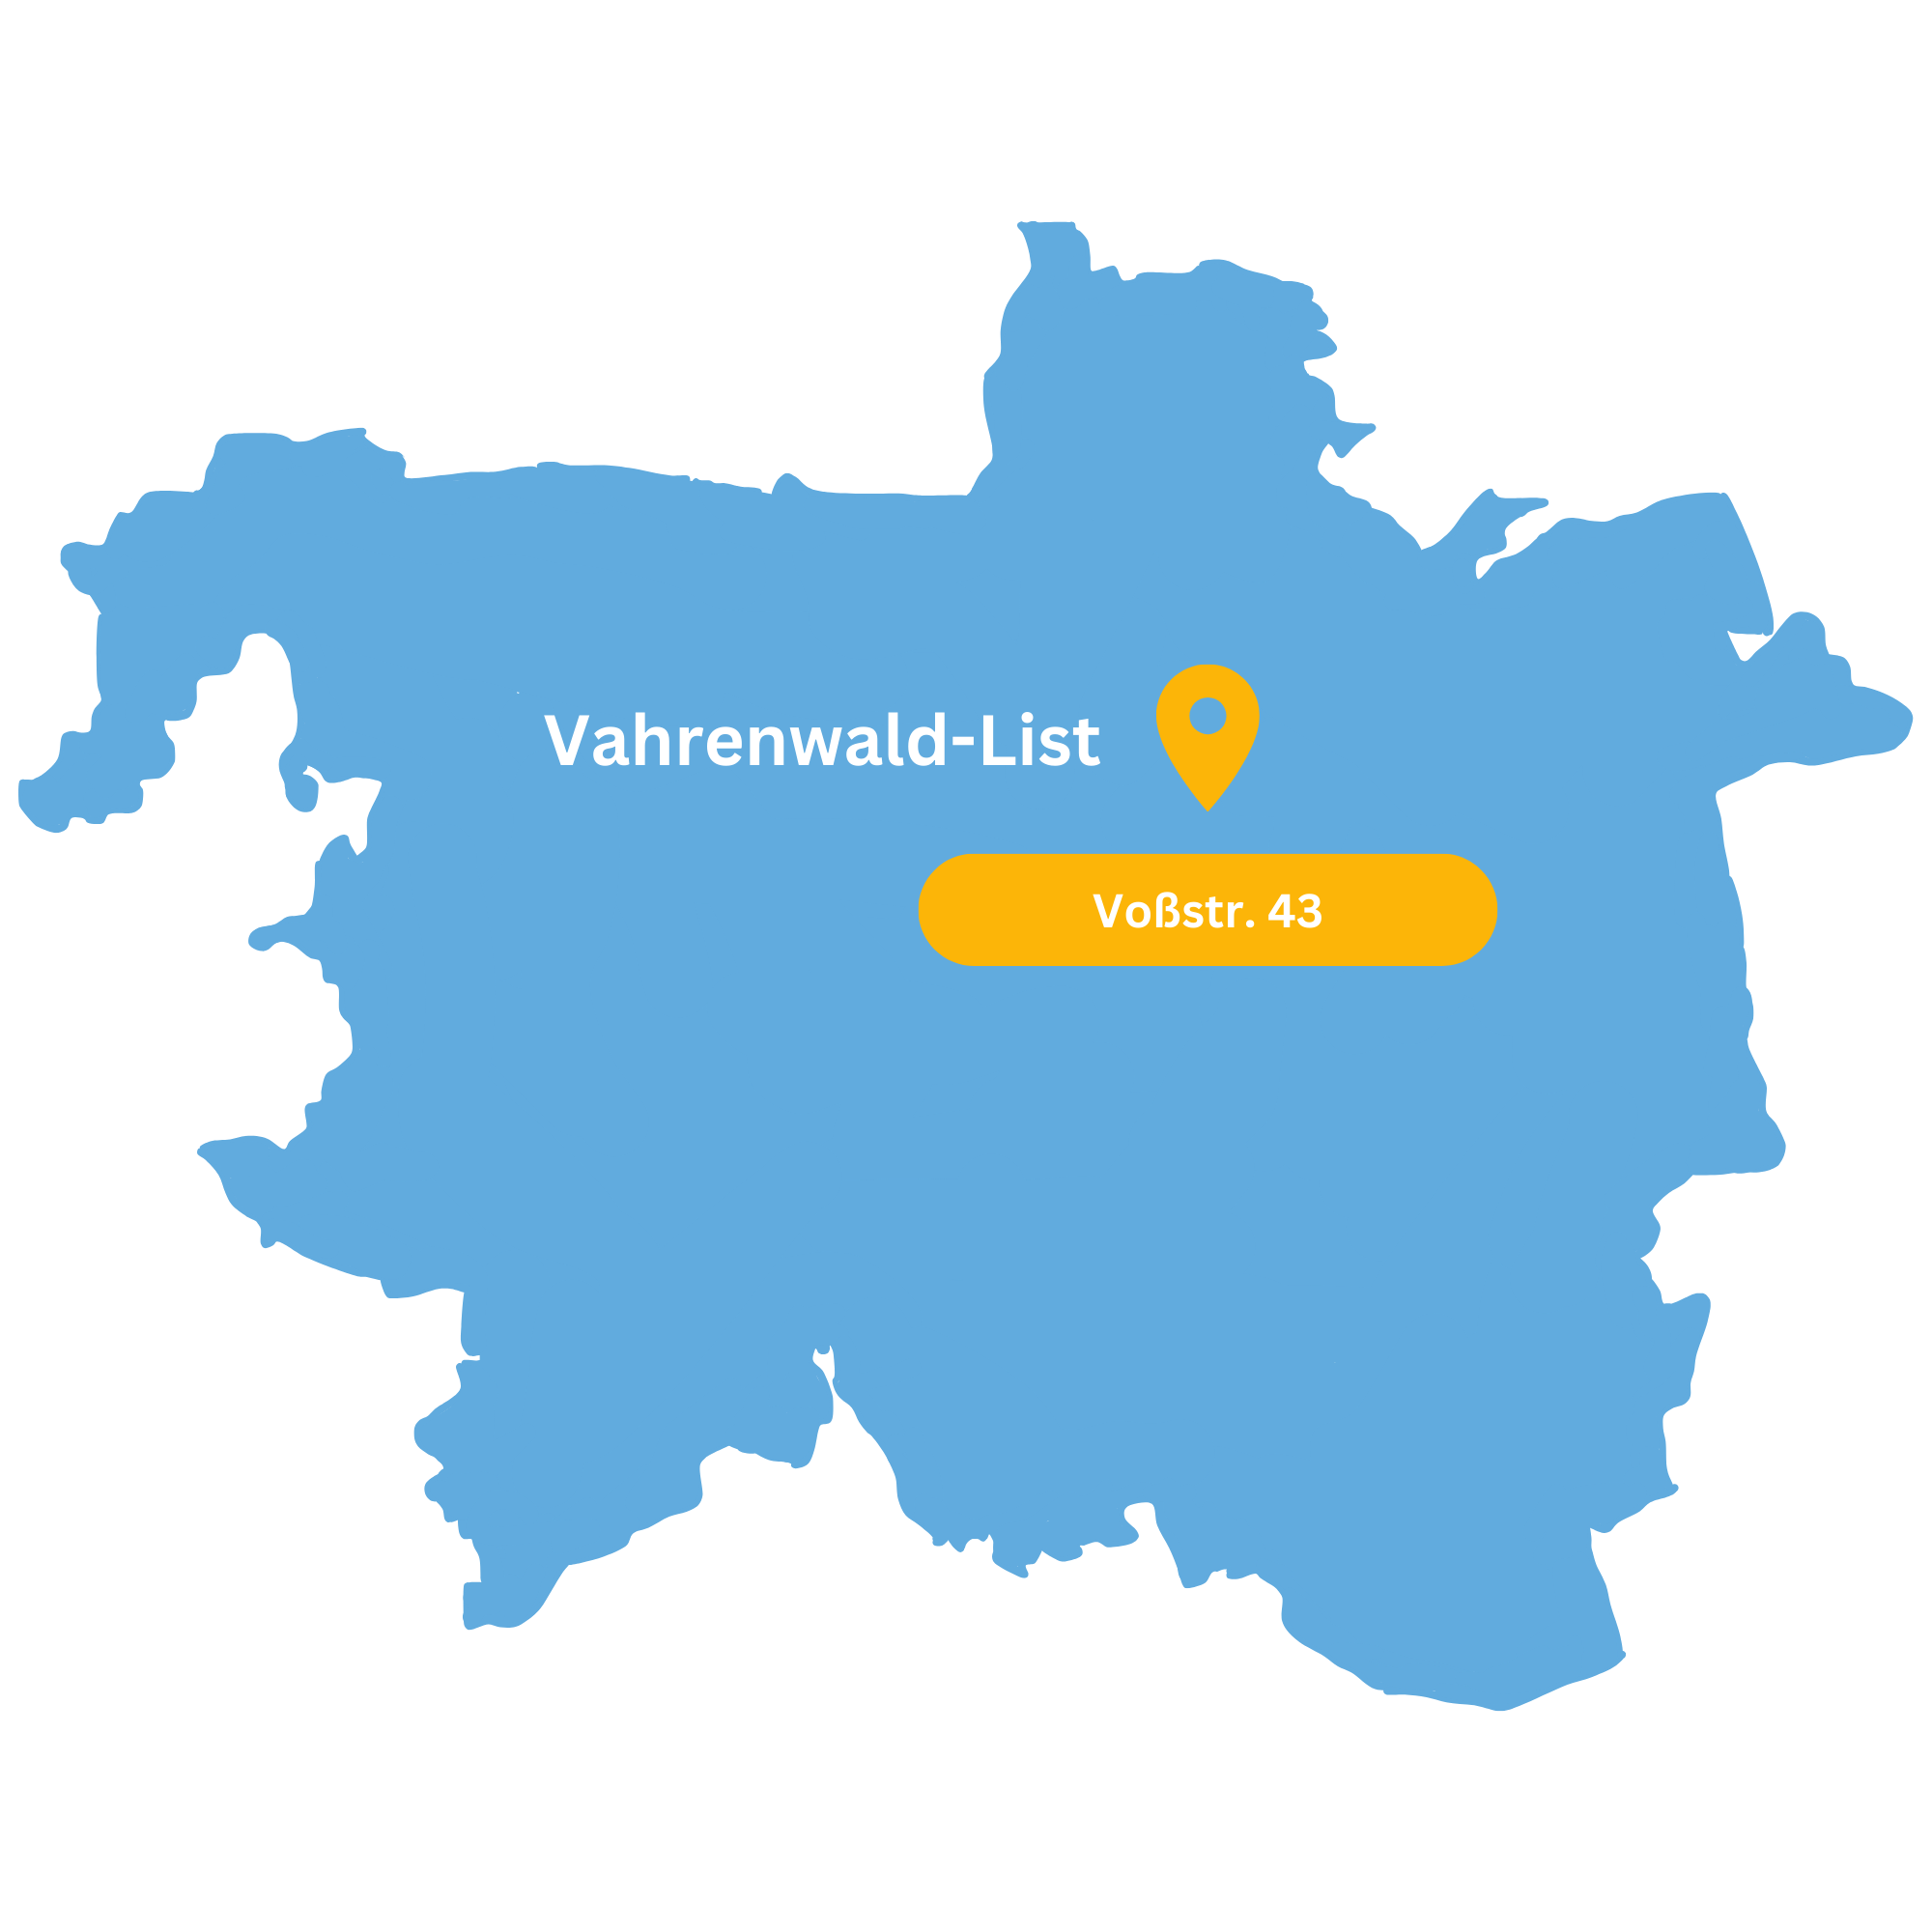 Karte mit Standorte für 1A Nachhilfe in Hannover Vahrenwald-List